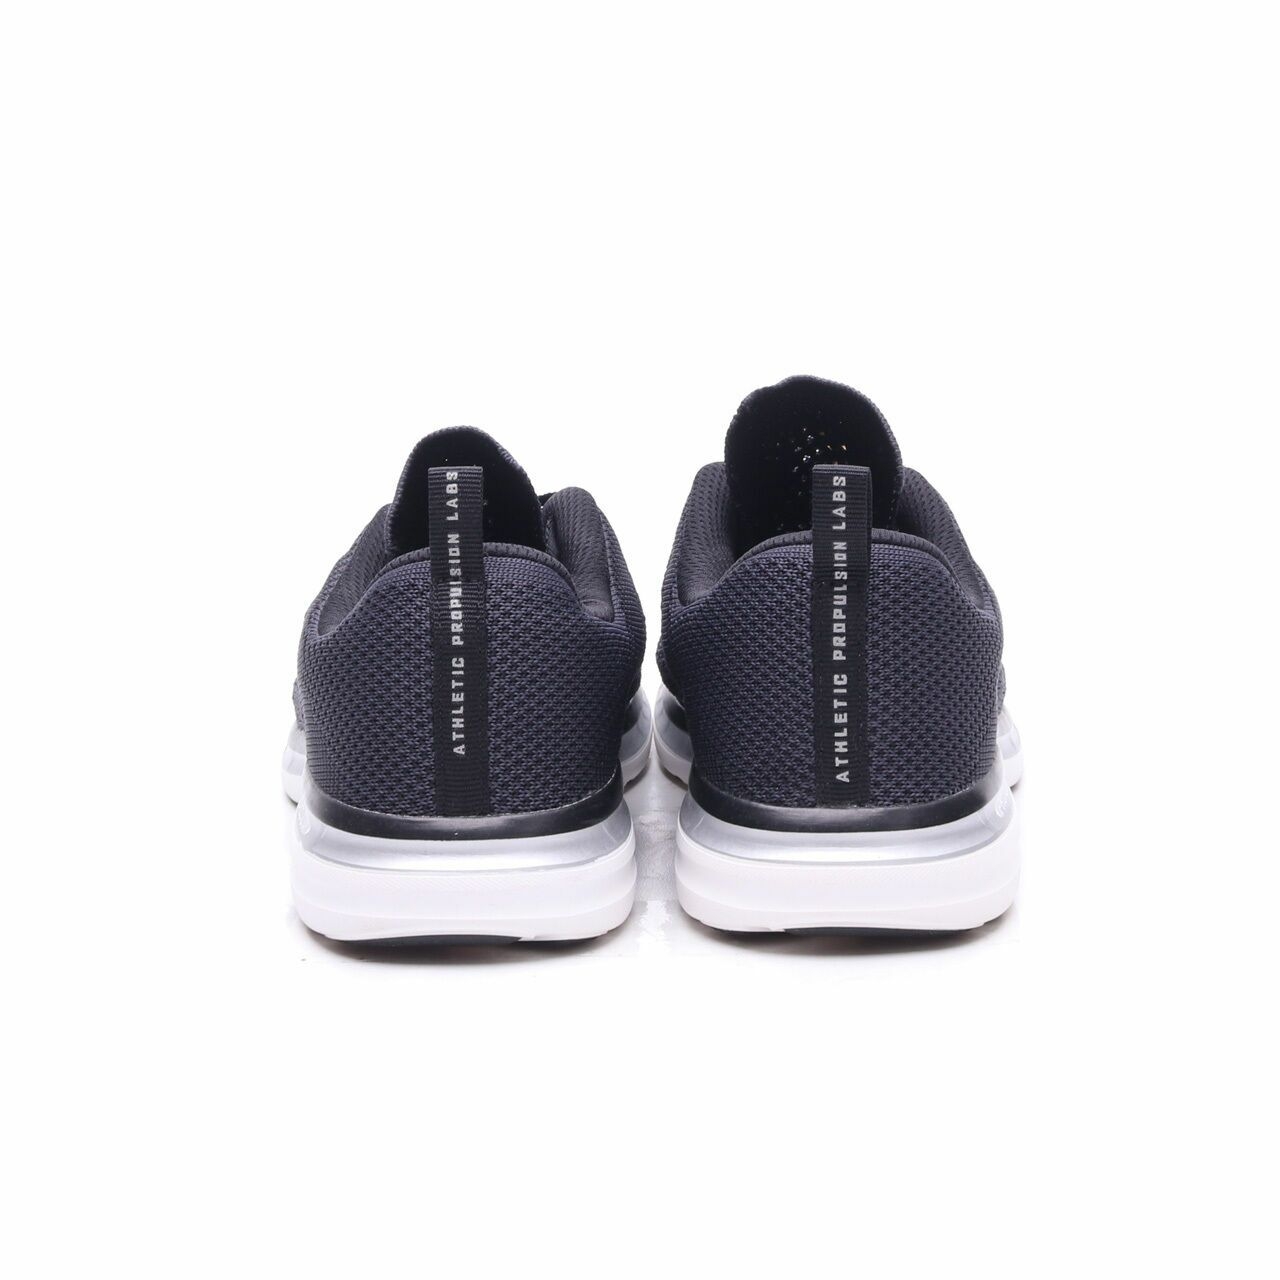 Athletic Propulsion Labs APL Black/Dark Blue Sneakers